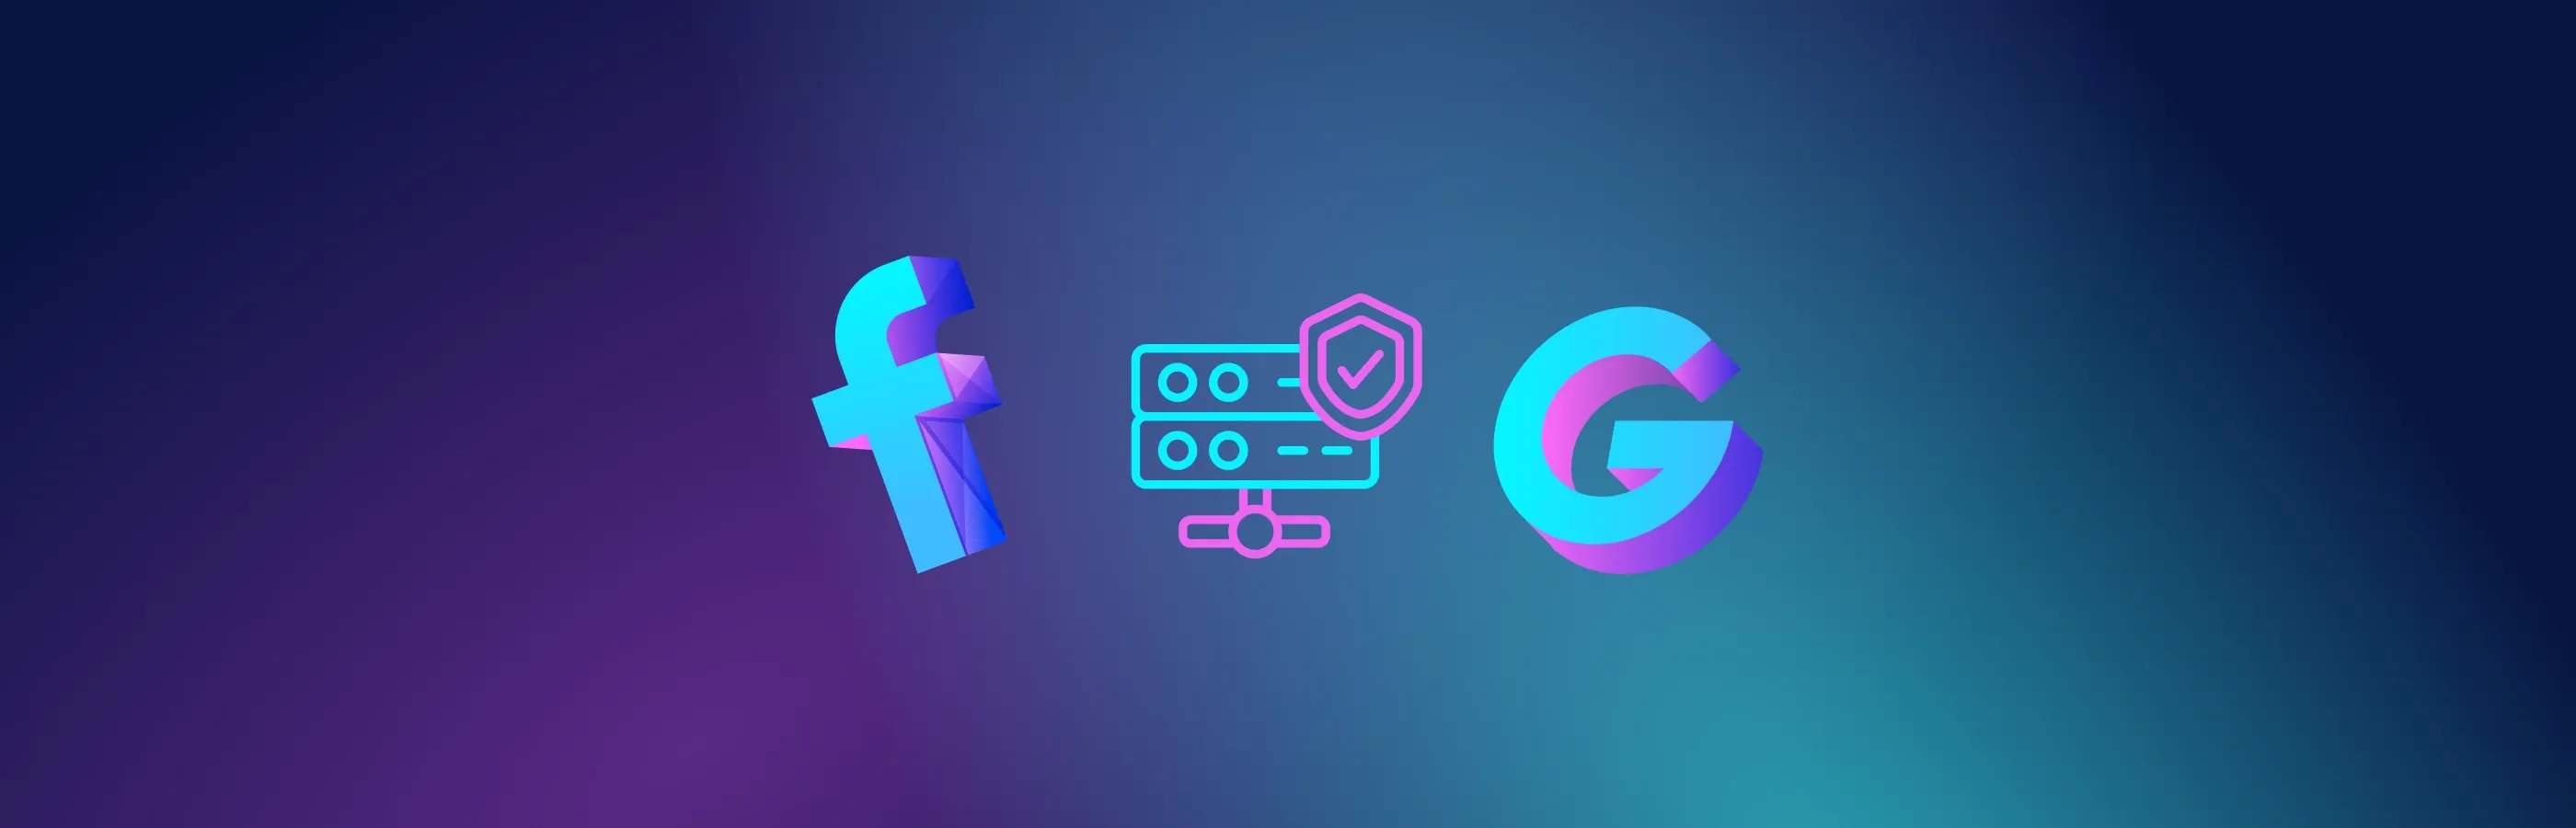 Comment choisir de bons proxies pour Facebook et Google : 6 conseils